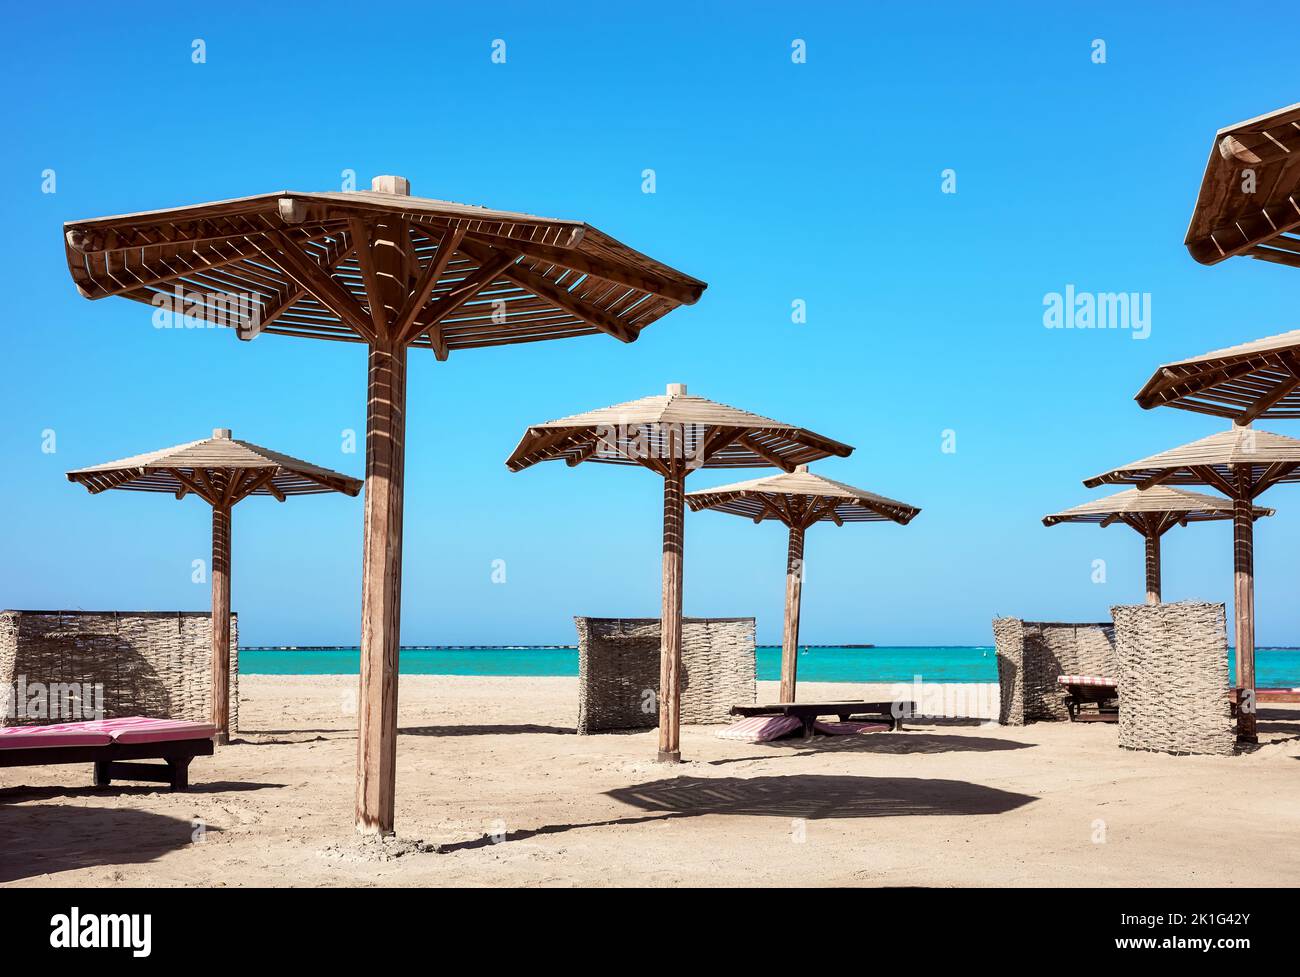 Sombrillas, tumbonas y parabrisas de madera en la playa, Marsa Alam, Egipto. Foto de stock